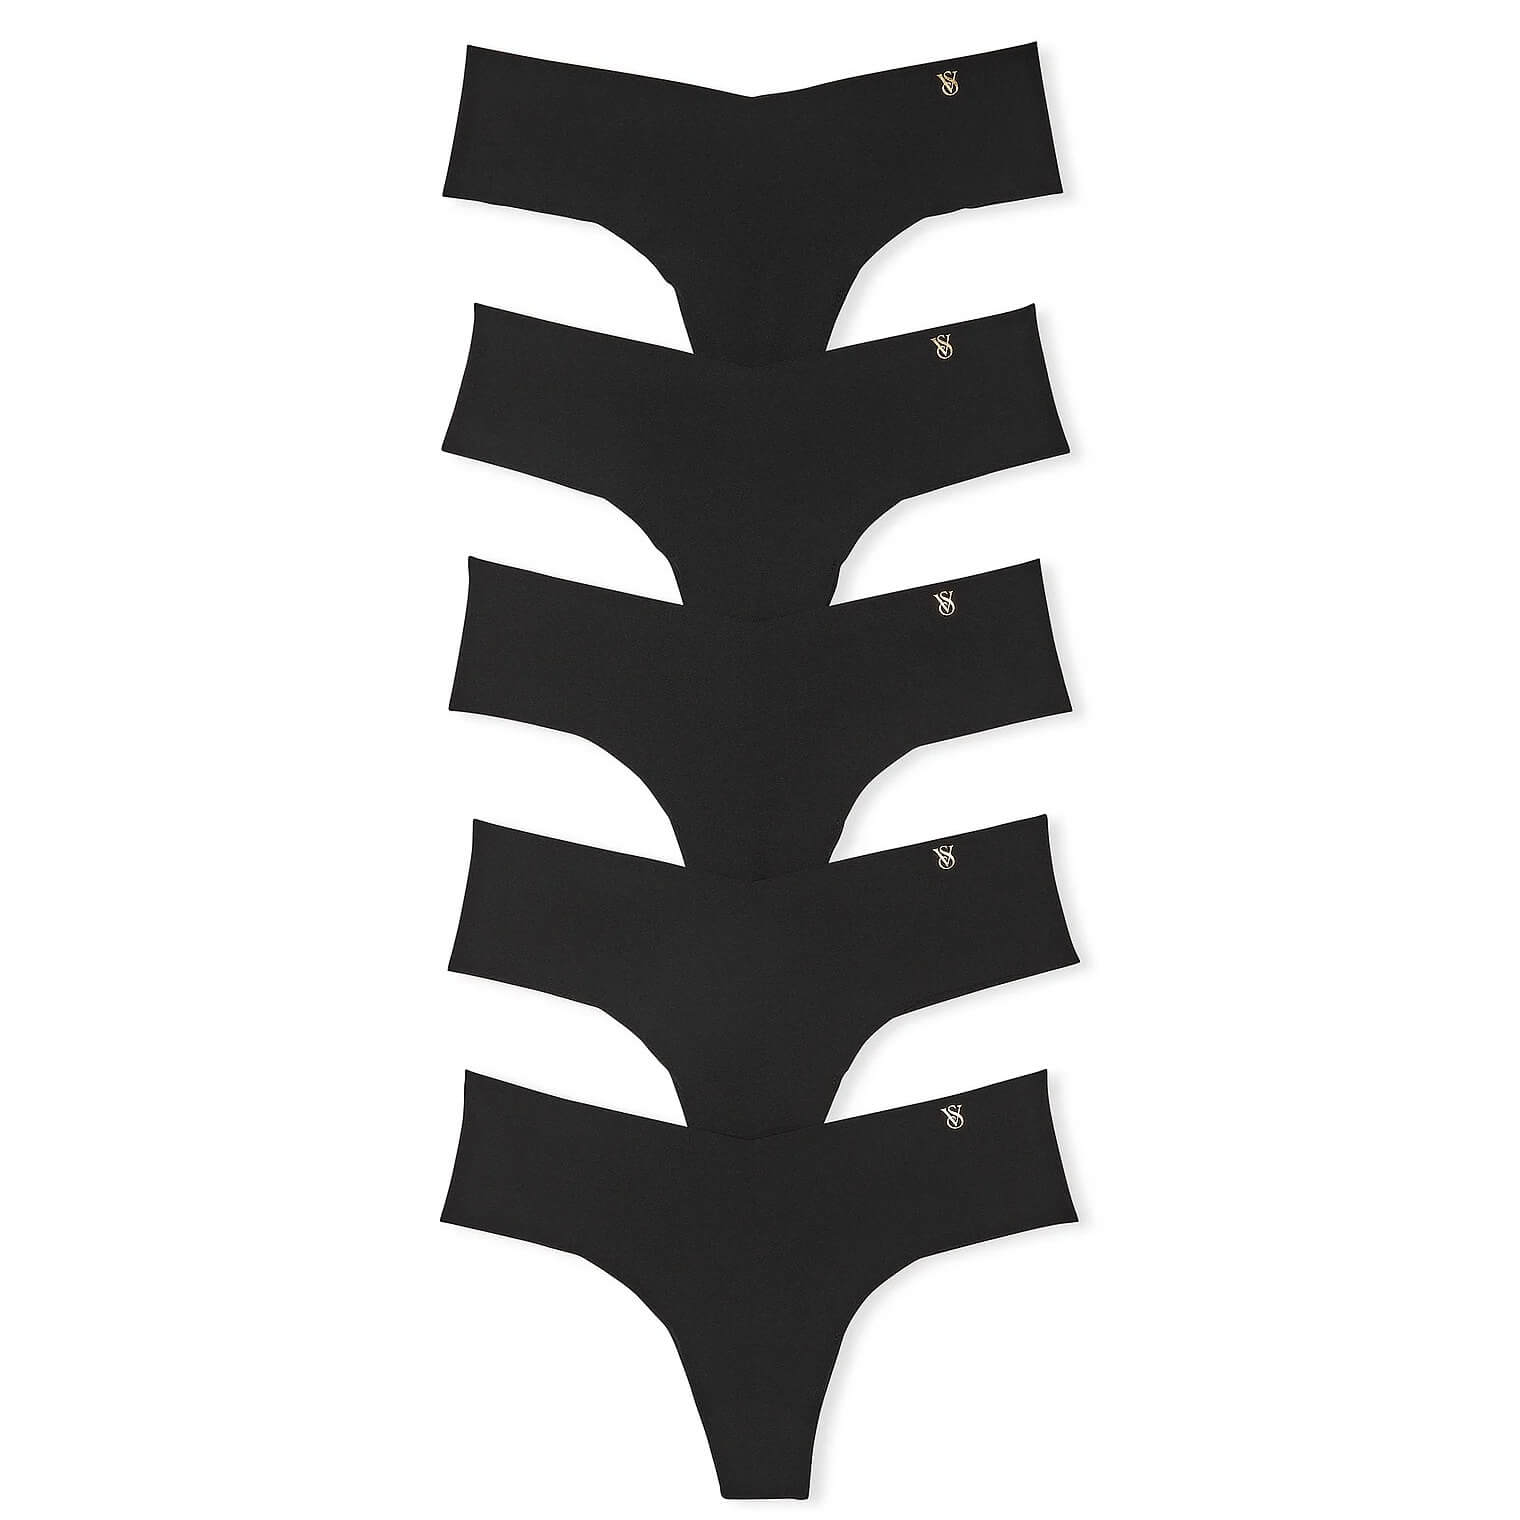 Комплект трусиков-стрингов Victoria's Secret No-Show, 5 штук, черный